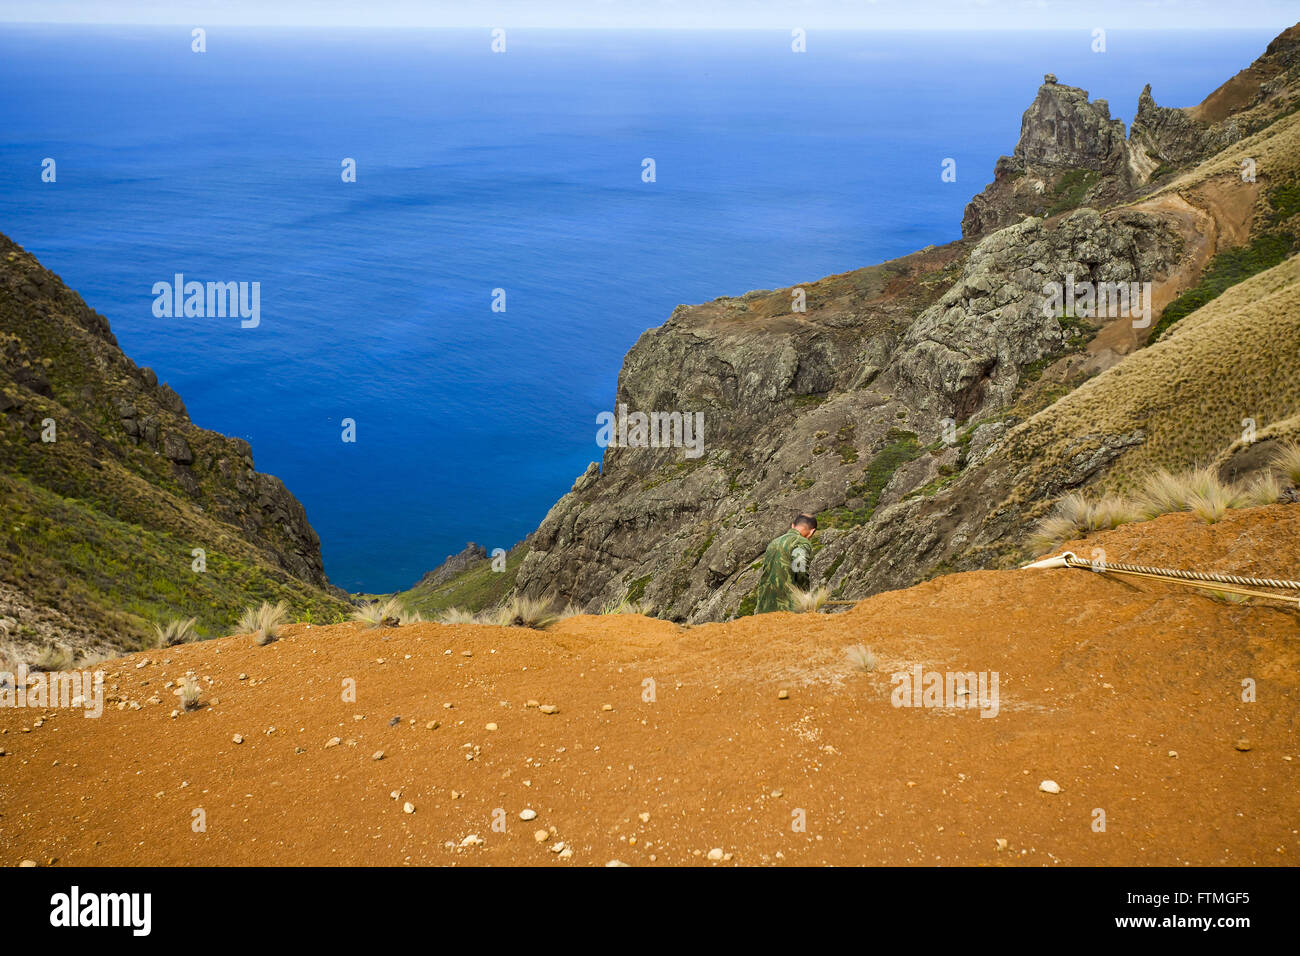 Paysage de l'île de Trinité avec l'océan Atlantique à l'arrière-plan Banque D'Images